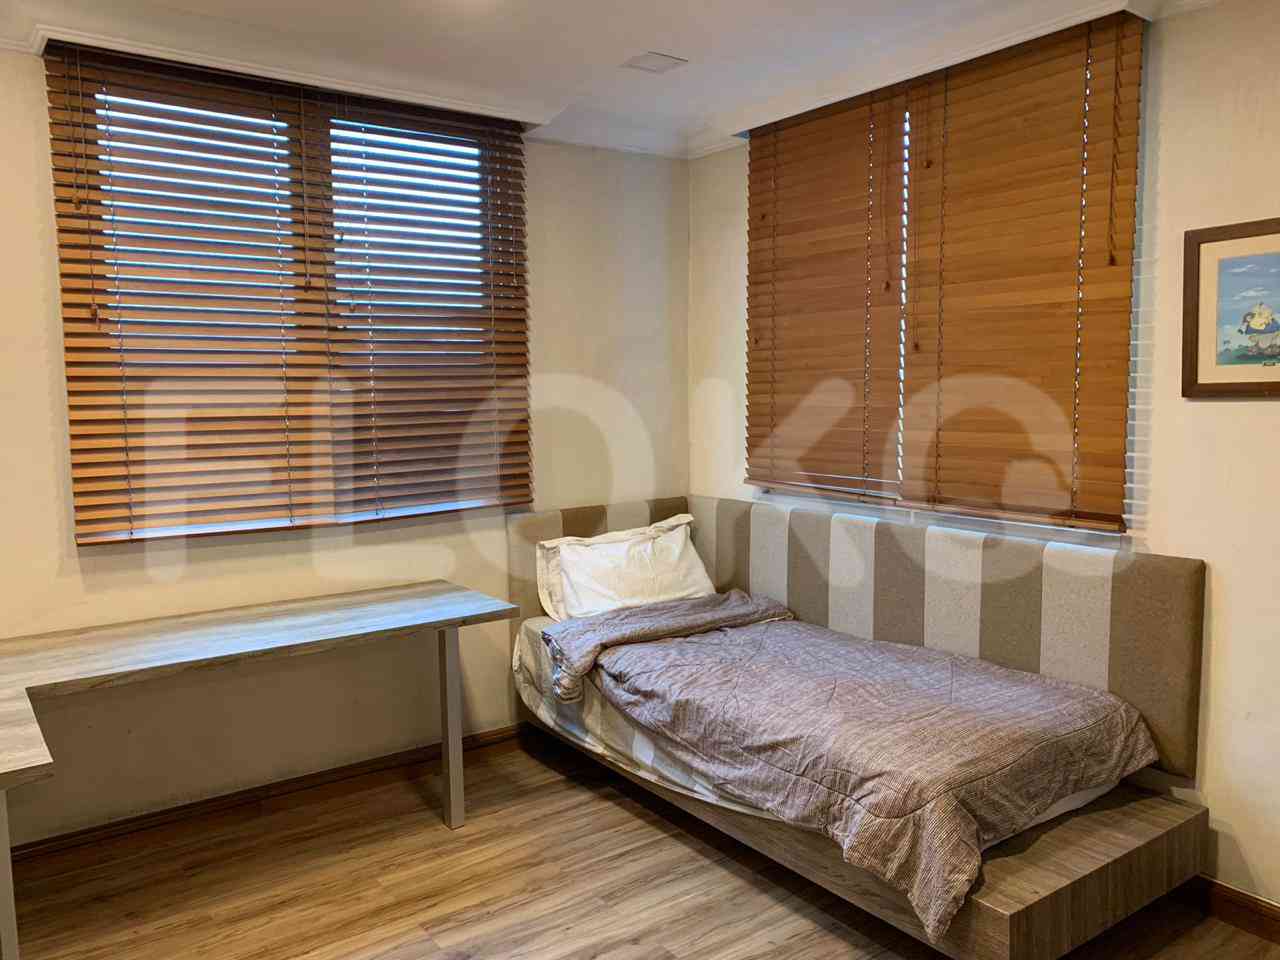 4 Bedroom on 10th Floor for Rent in Puri Imperium Apartment - fkua44 7